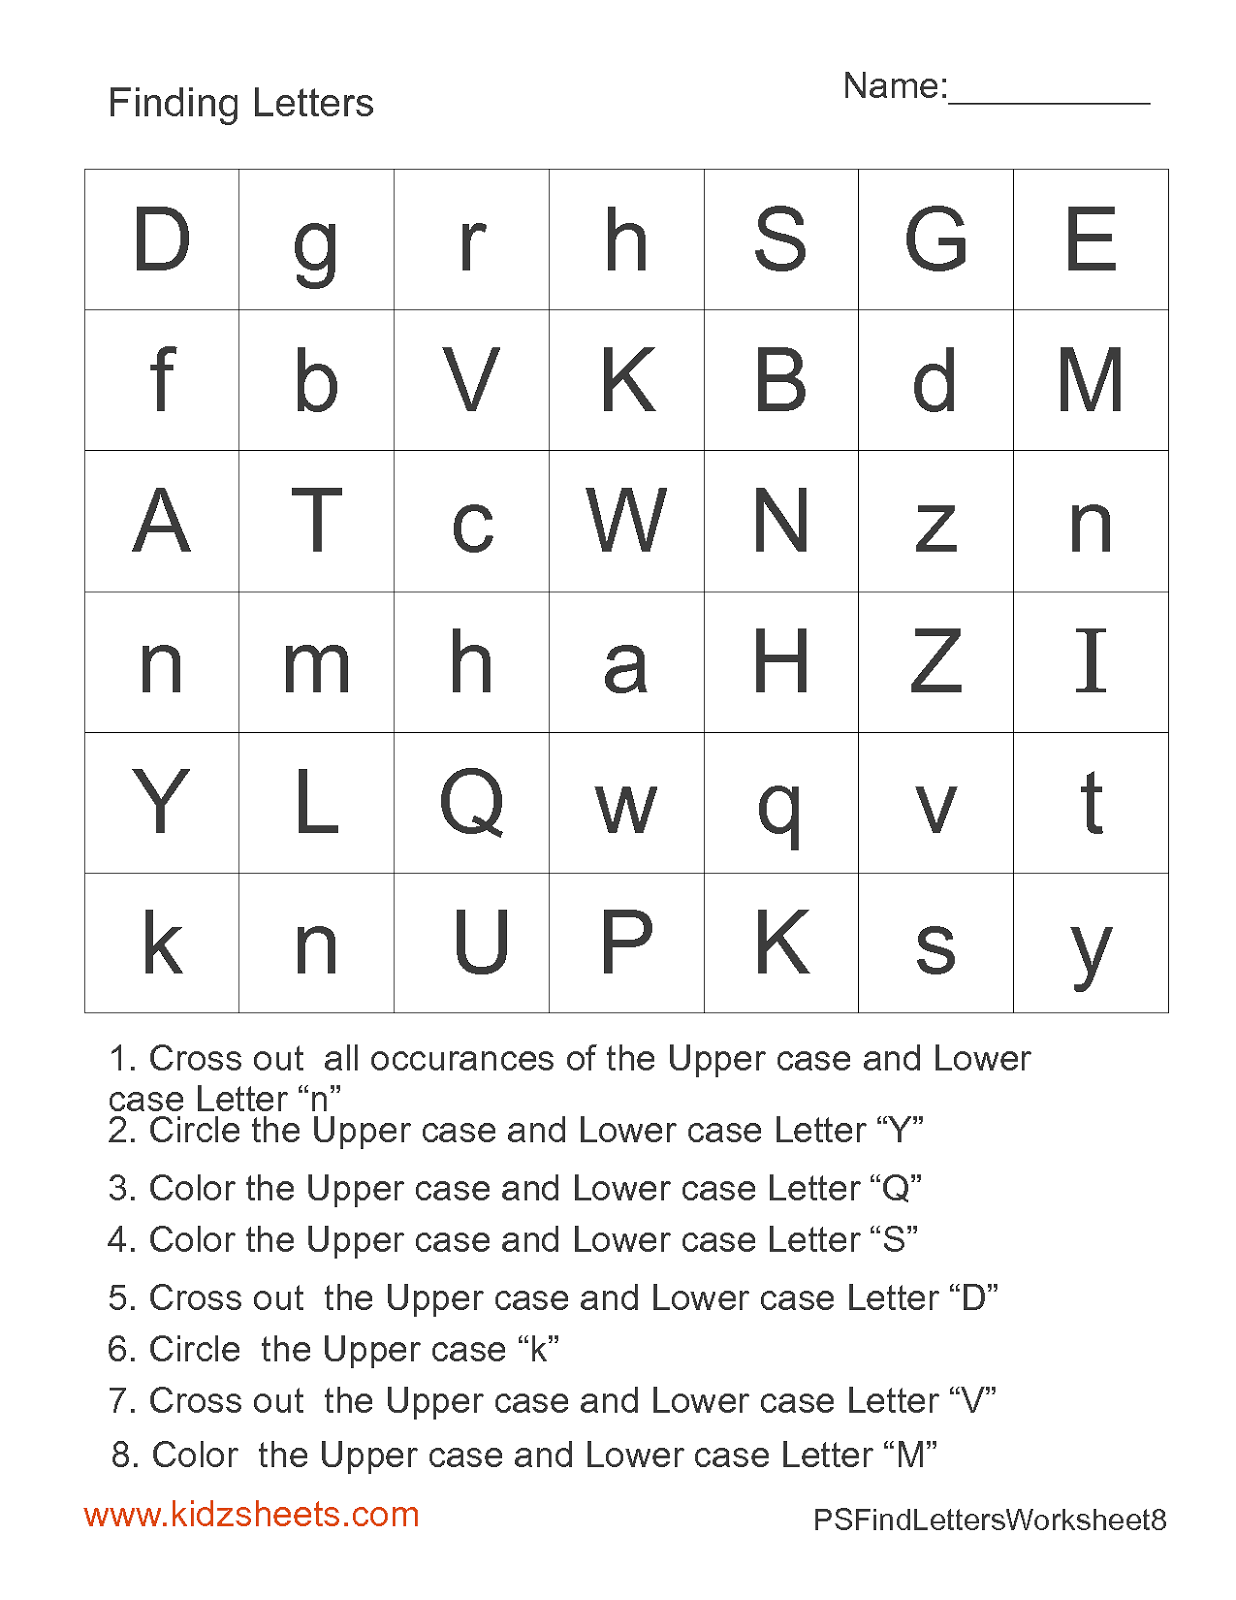 Preschool Letter Find Worksheets Image